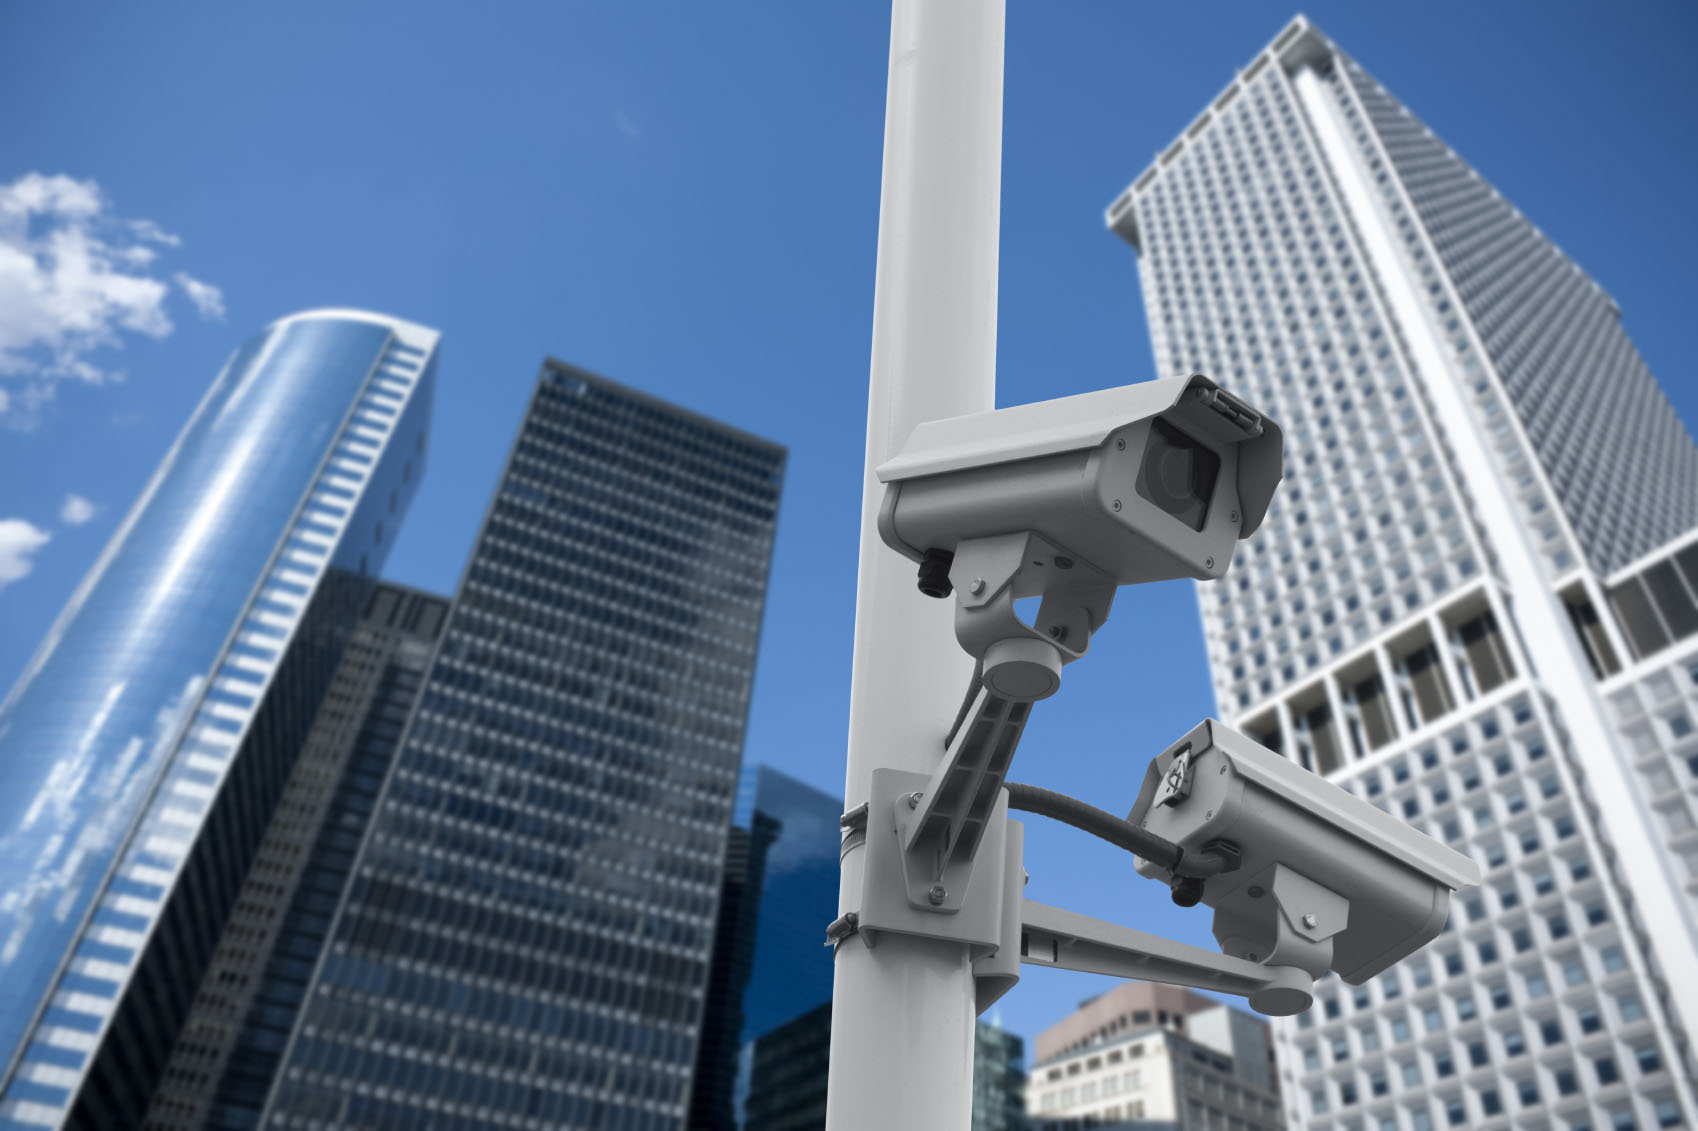 Giải pháp camera giám sát an ninh tại sân vận động và trung tâm hội nghị